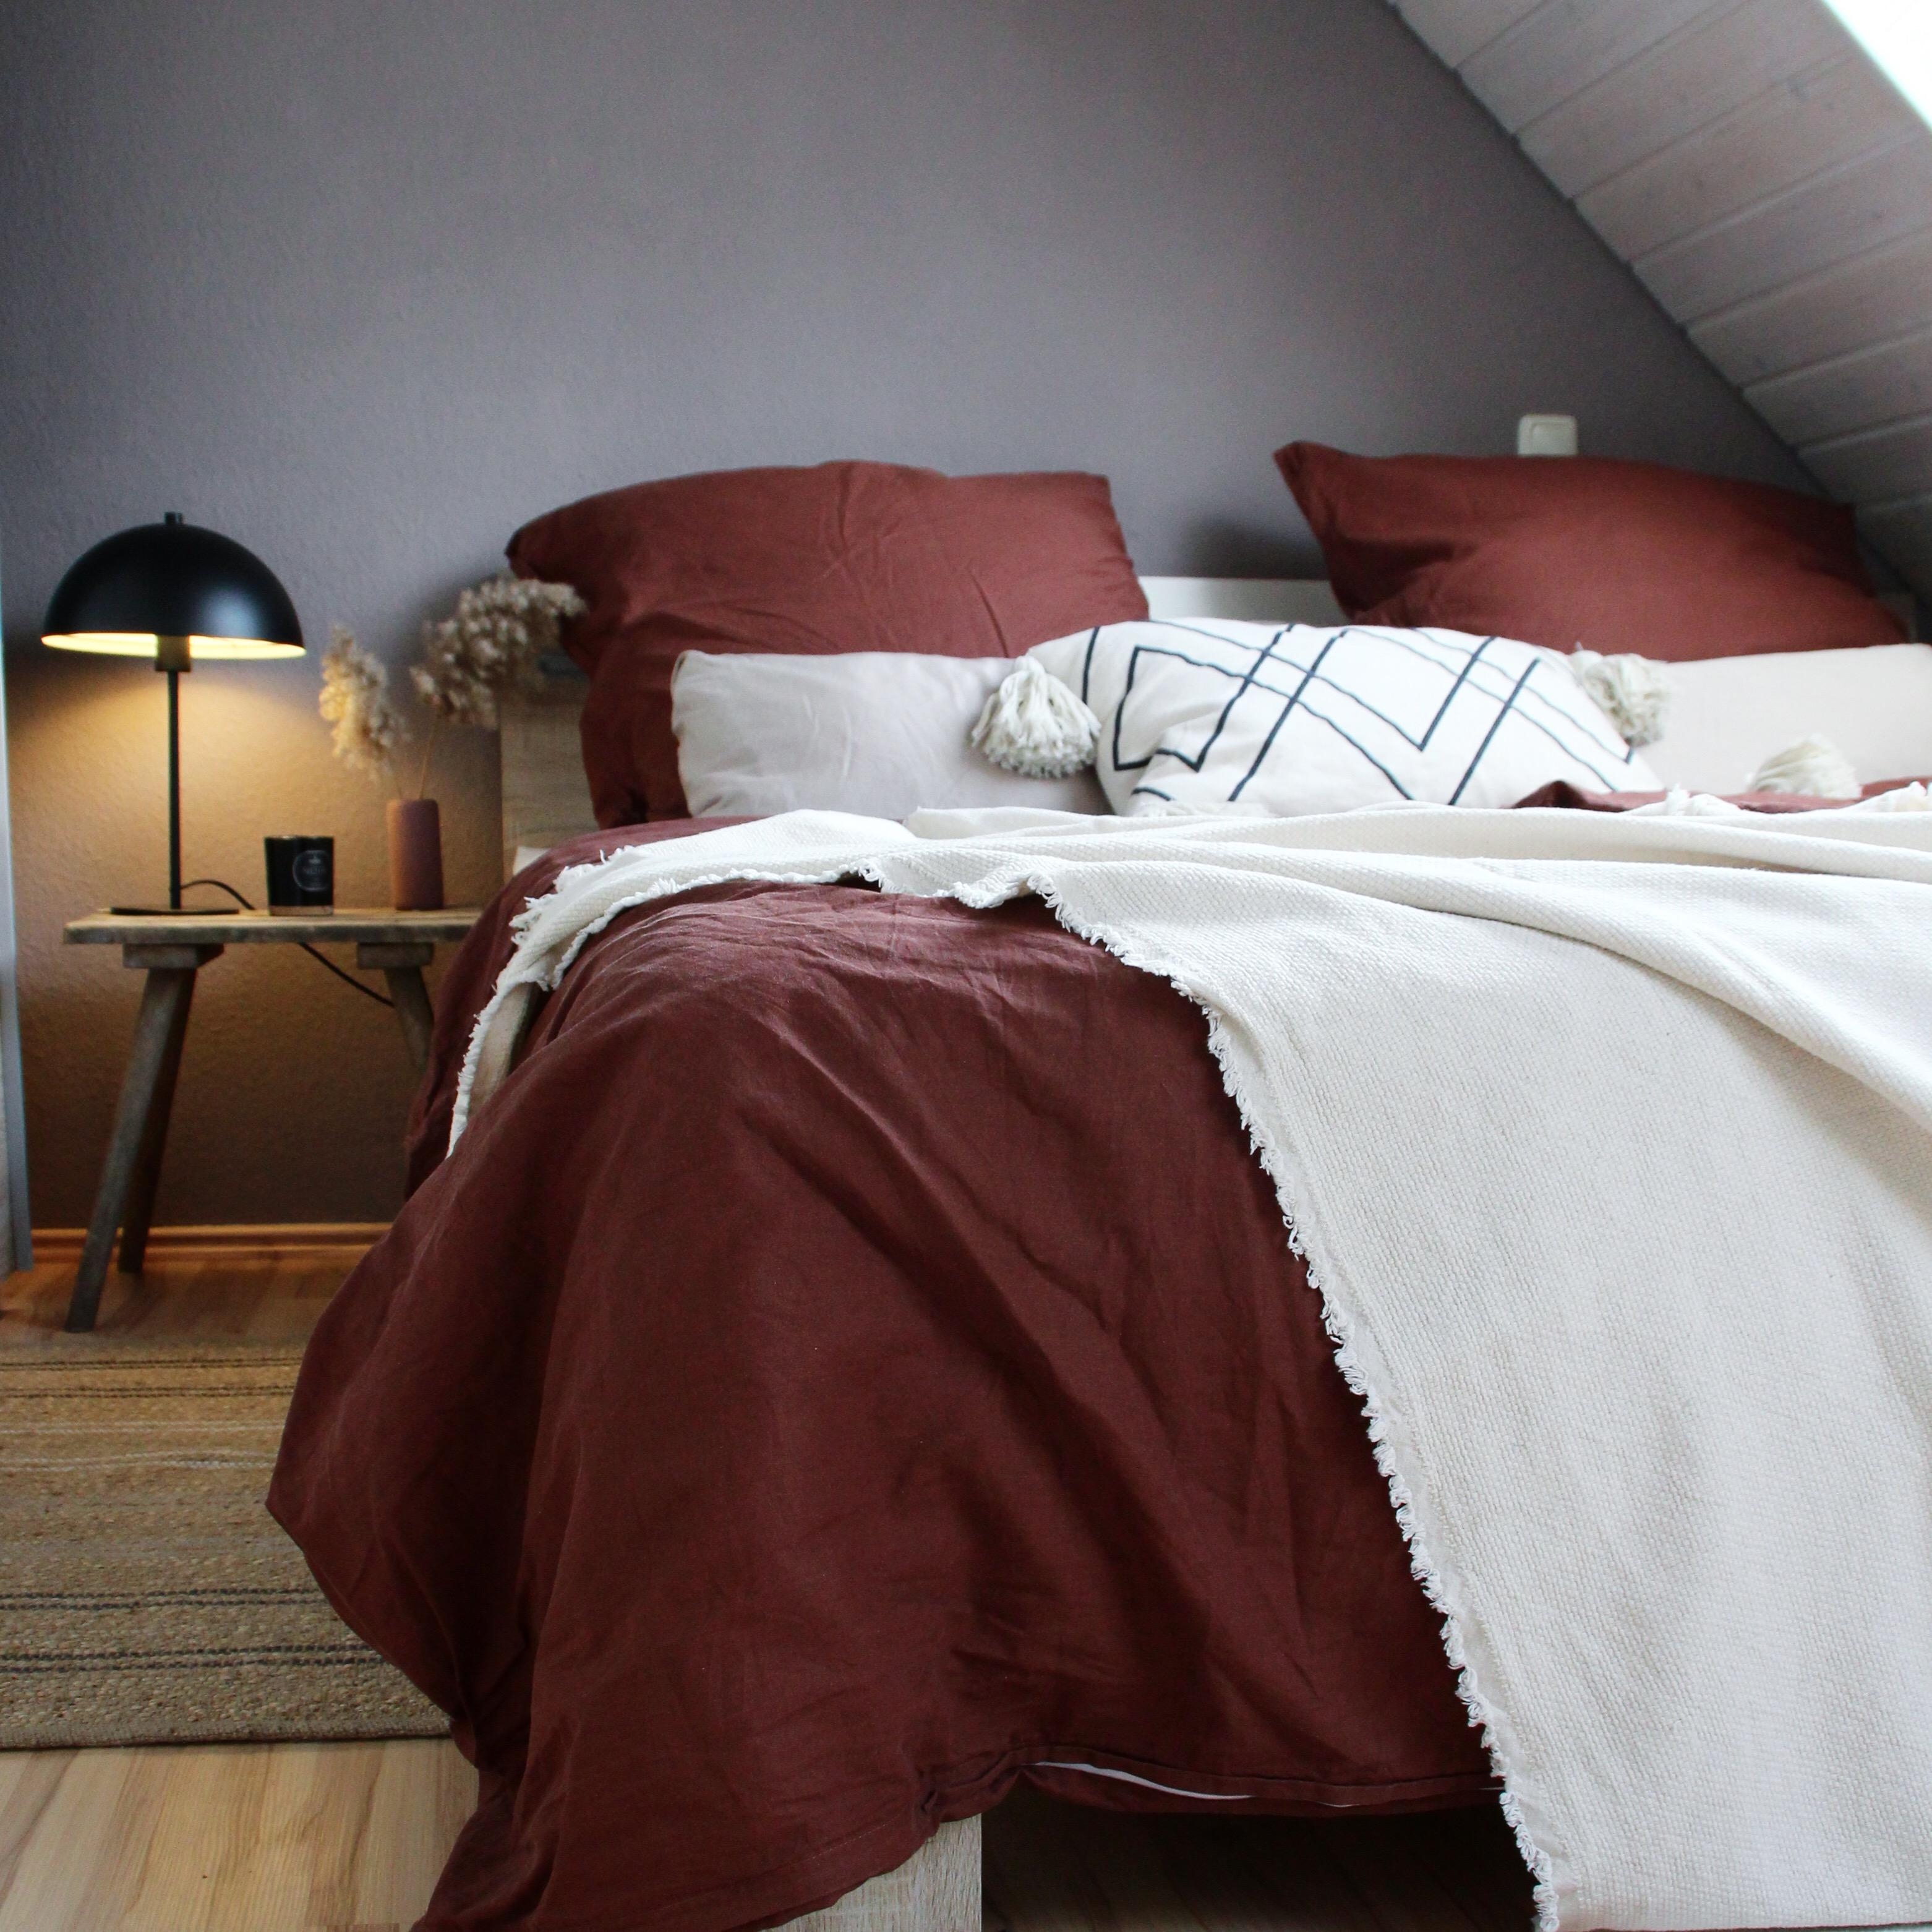 Neue Wohnung, neuer Stil. Tausche cleanes Weiß gegen starke Naturtfarben! #schlafzimmer #bedroom #boho #scandidesign